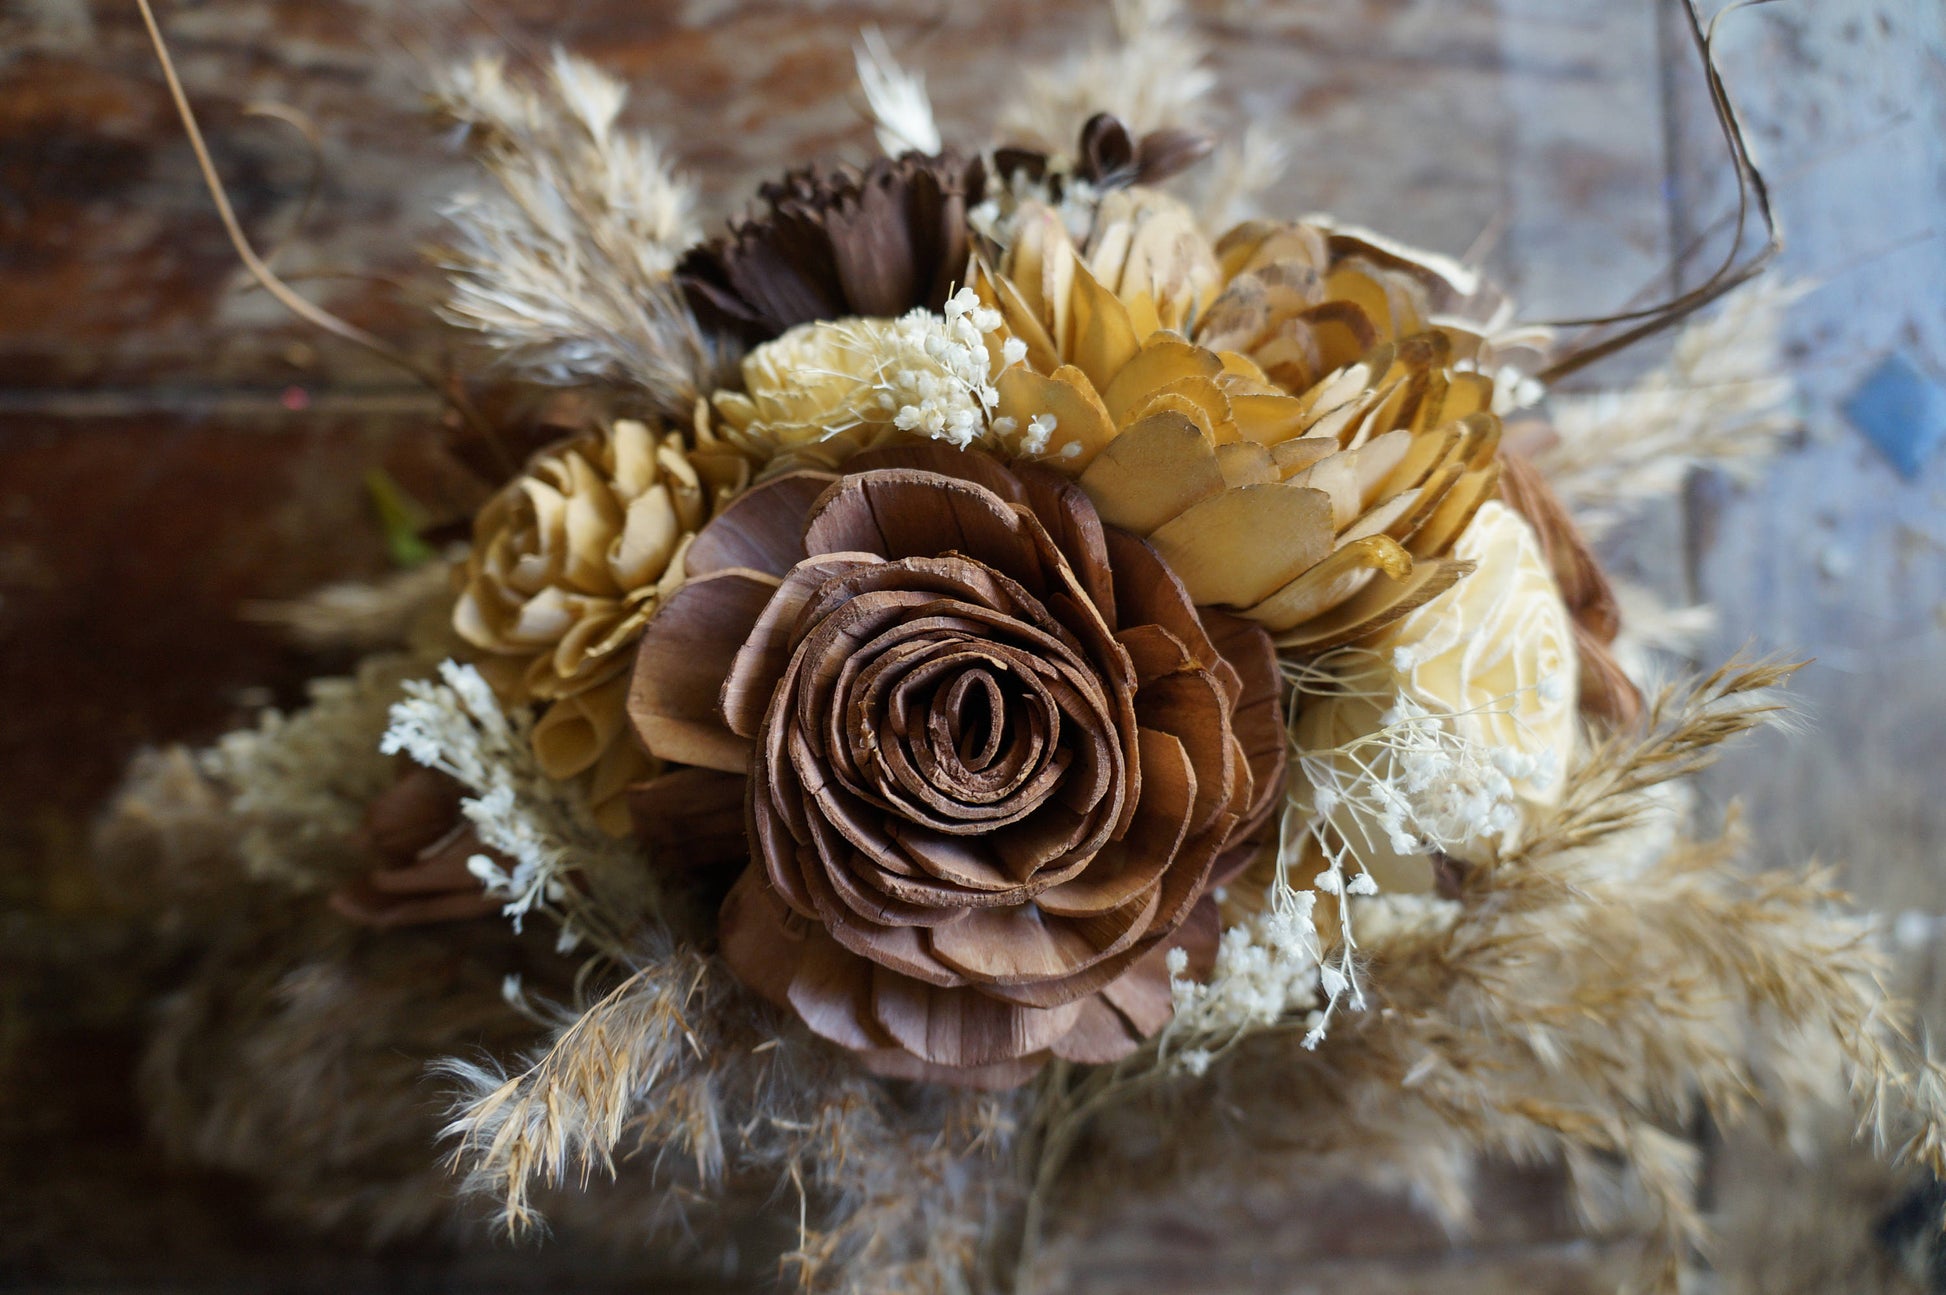 Dandy Bouquet – Sola Wood Flowers